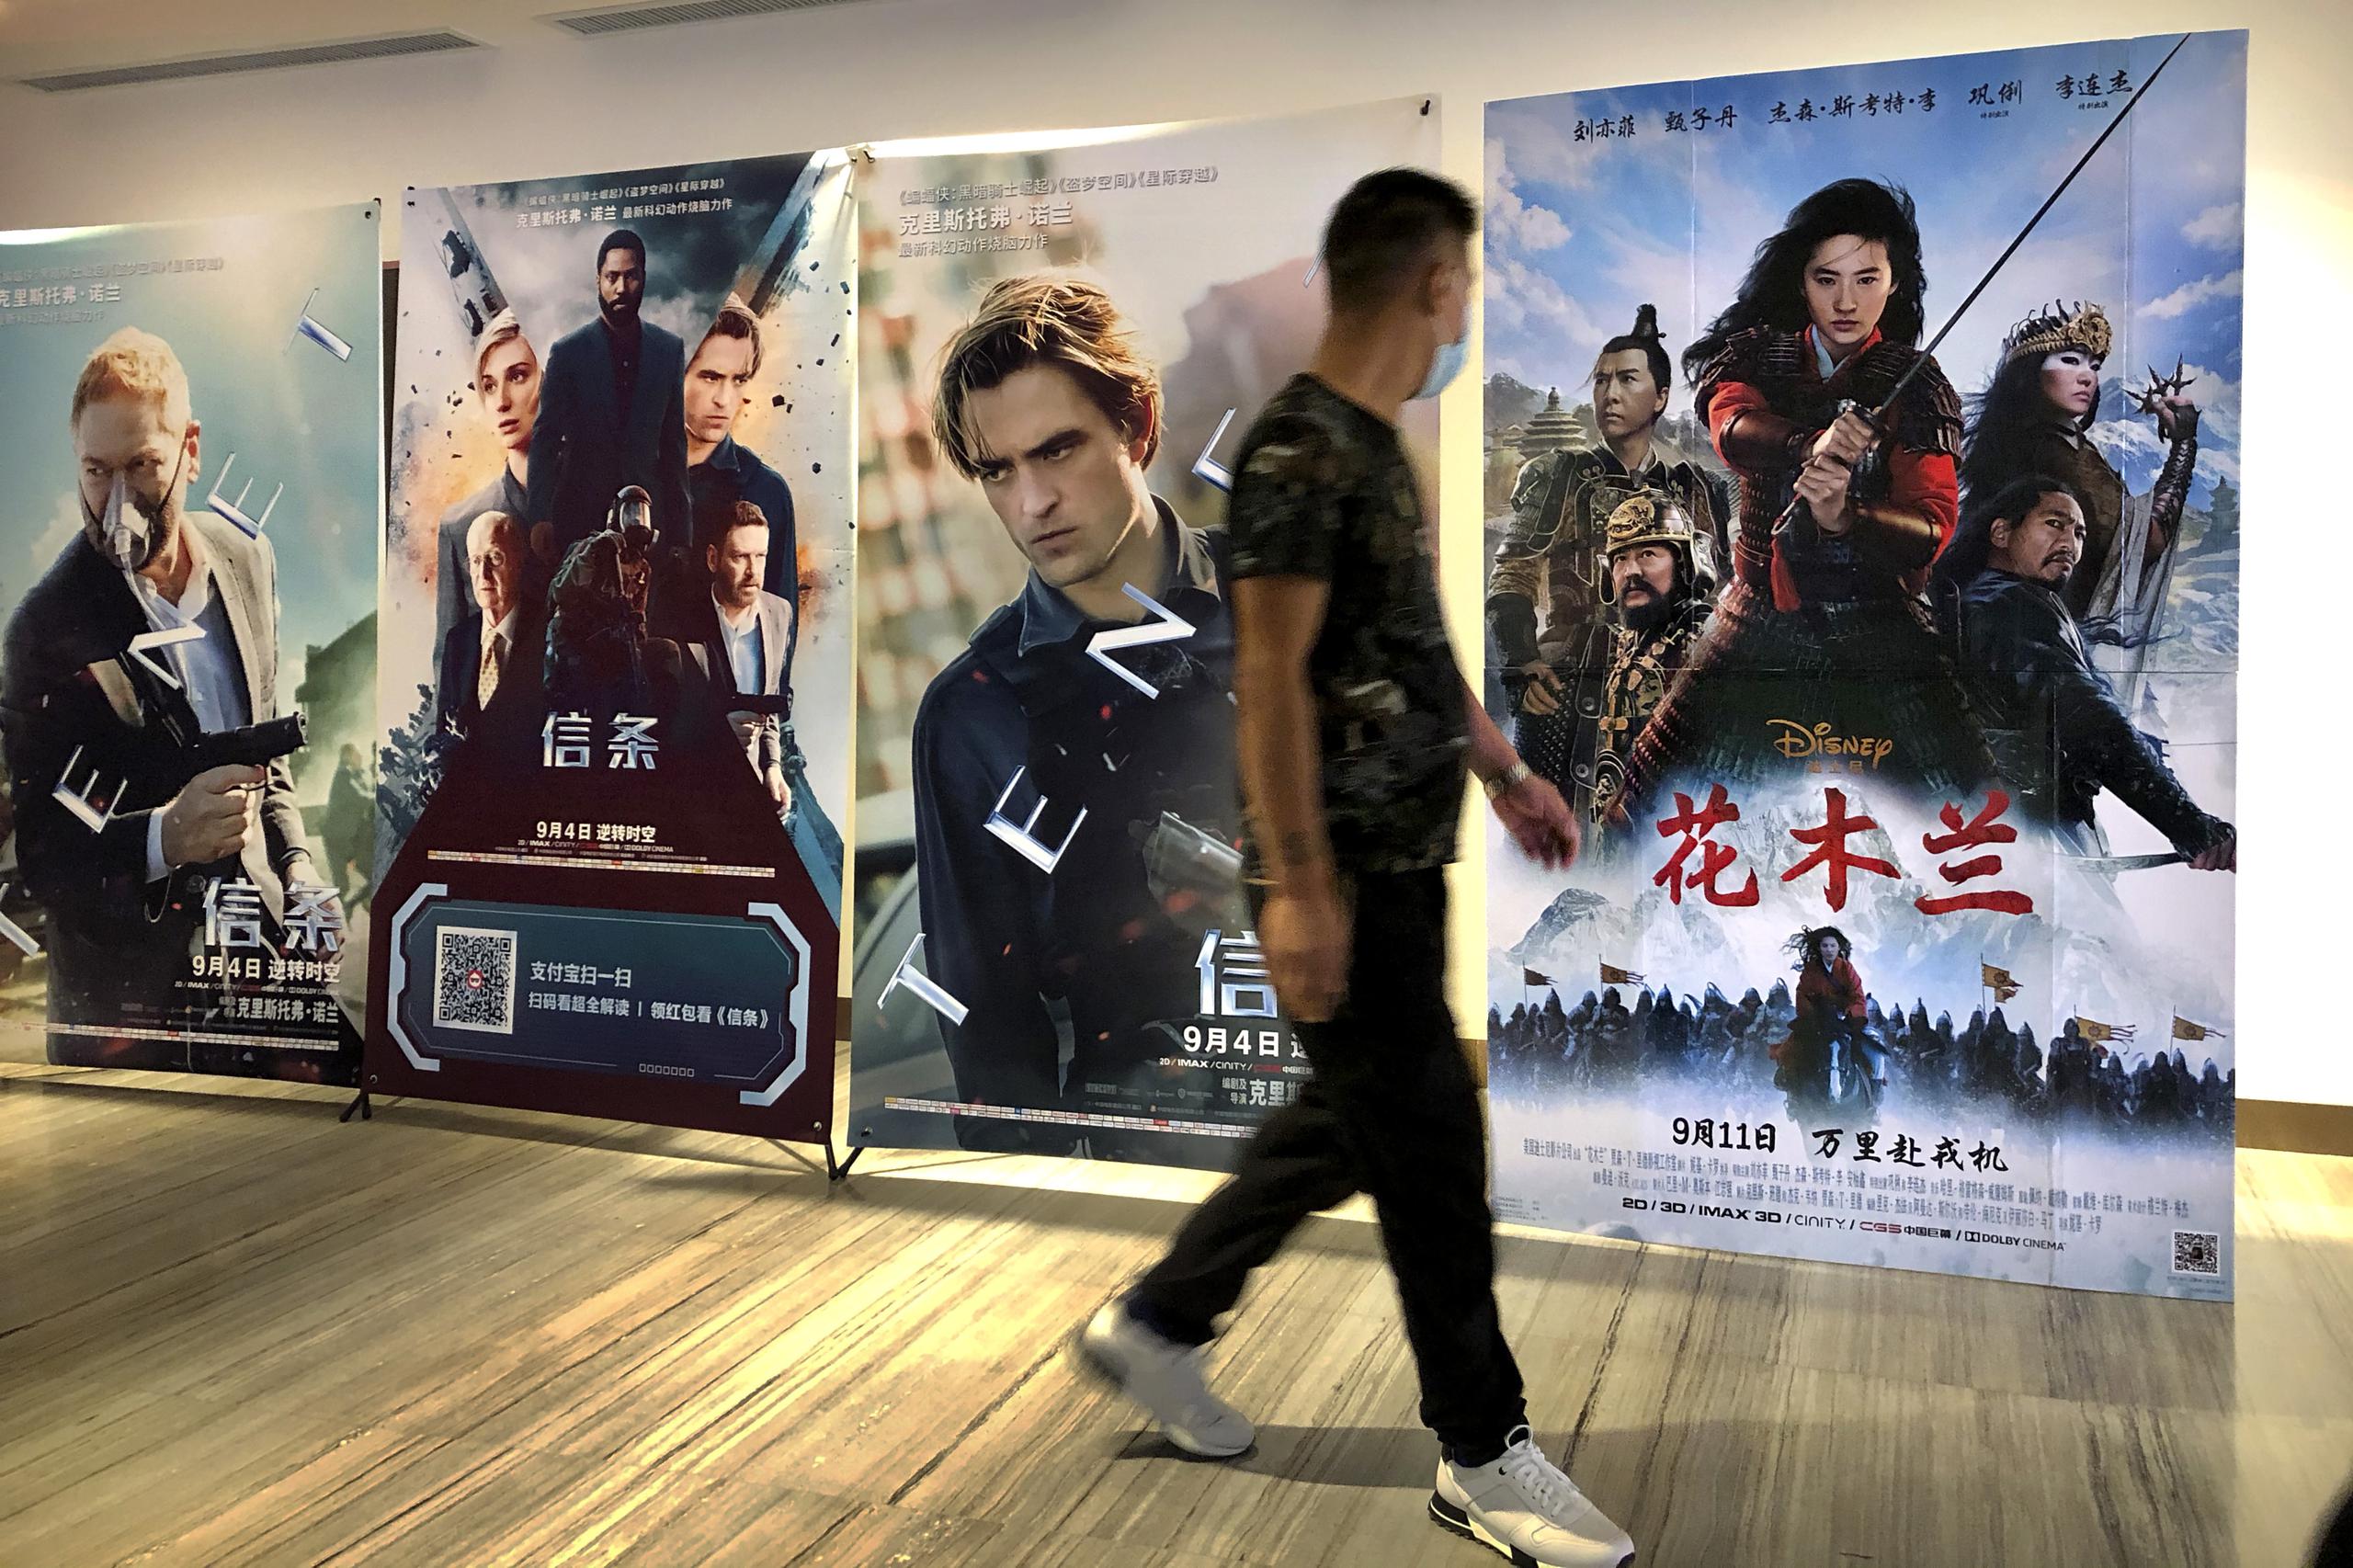 Un hombre con mascarilla pasa junto a un póster de la película de Disney "Mulan" en un cine en Beijing